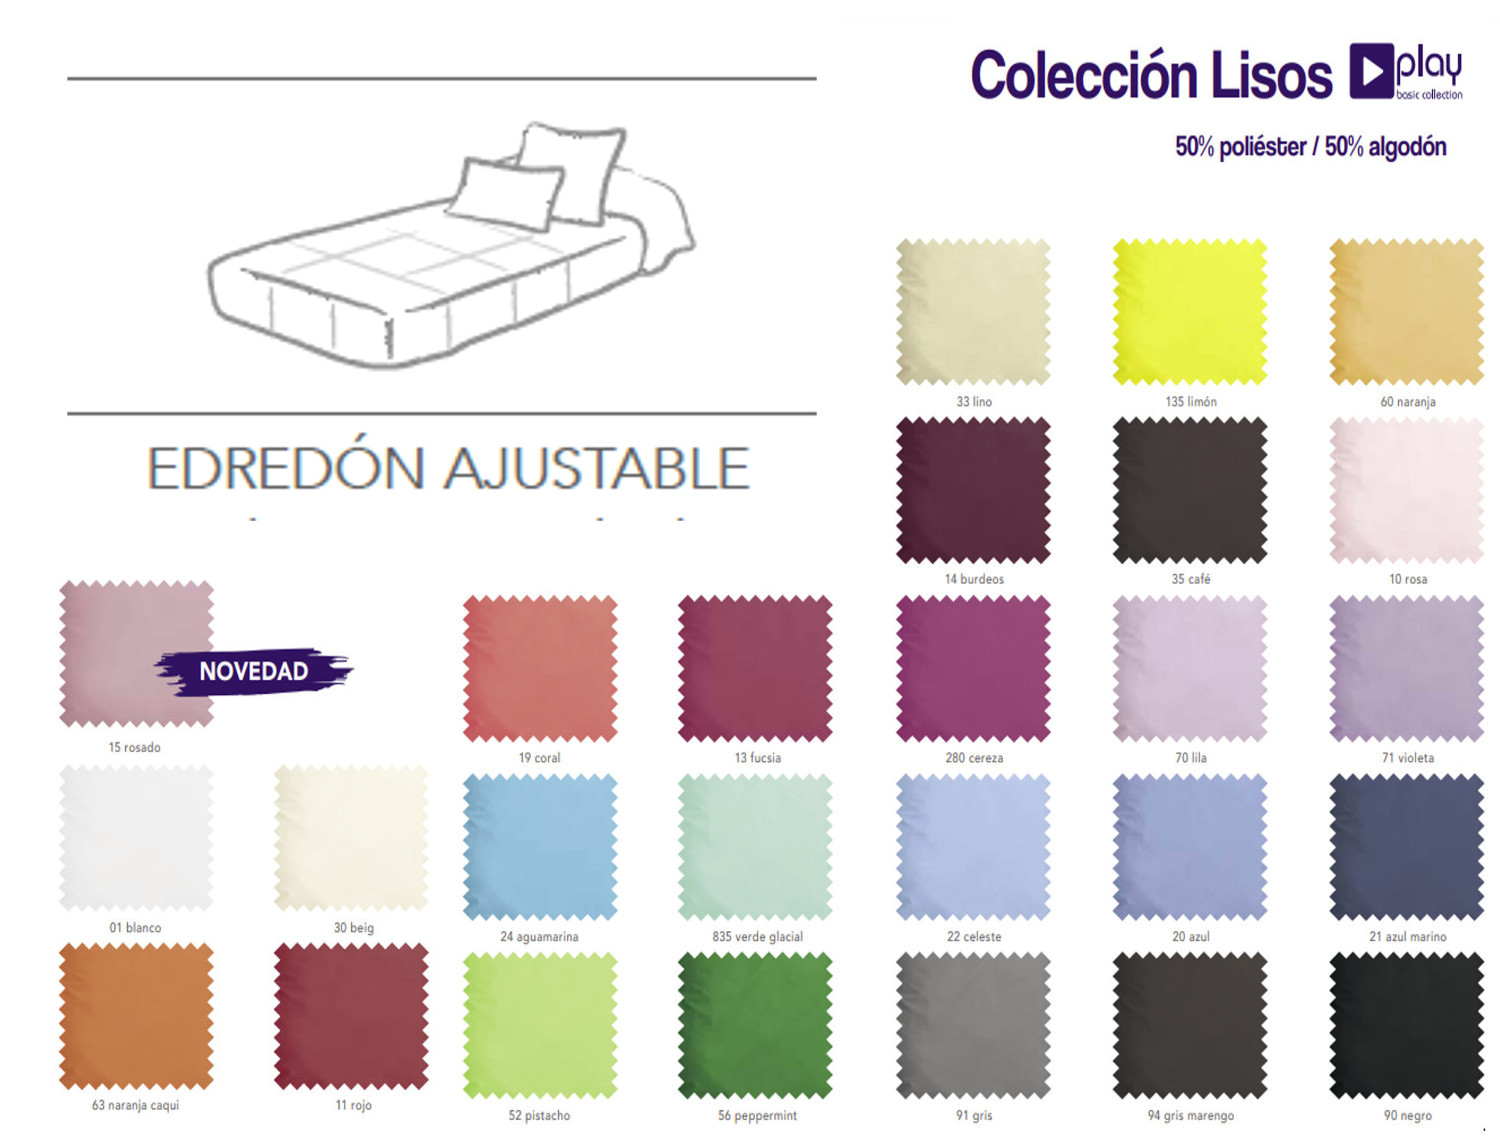 Edredón ajustable liso Play Collection rosa cama 105 Centro Textil Hogar